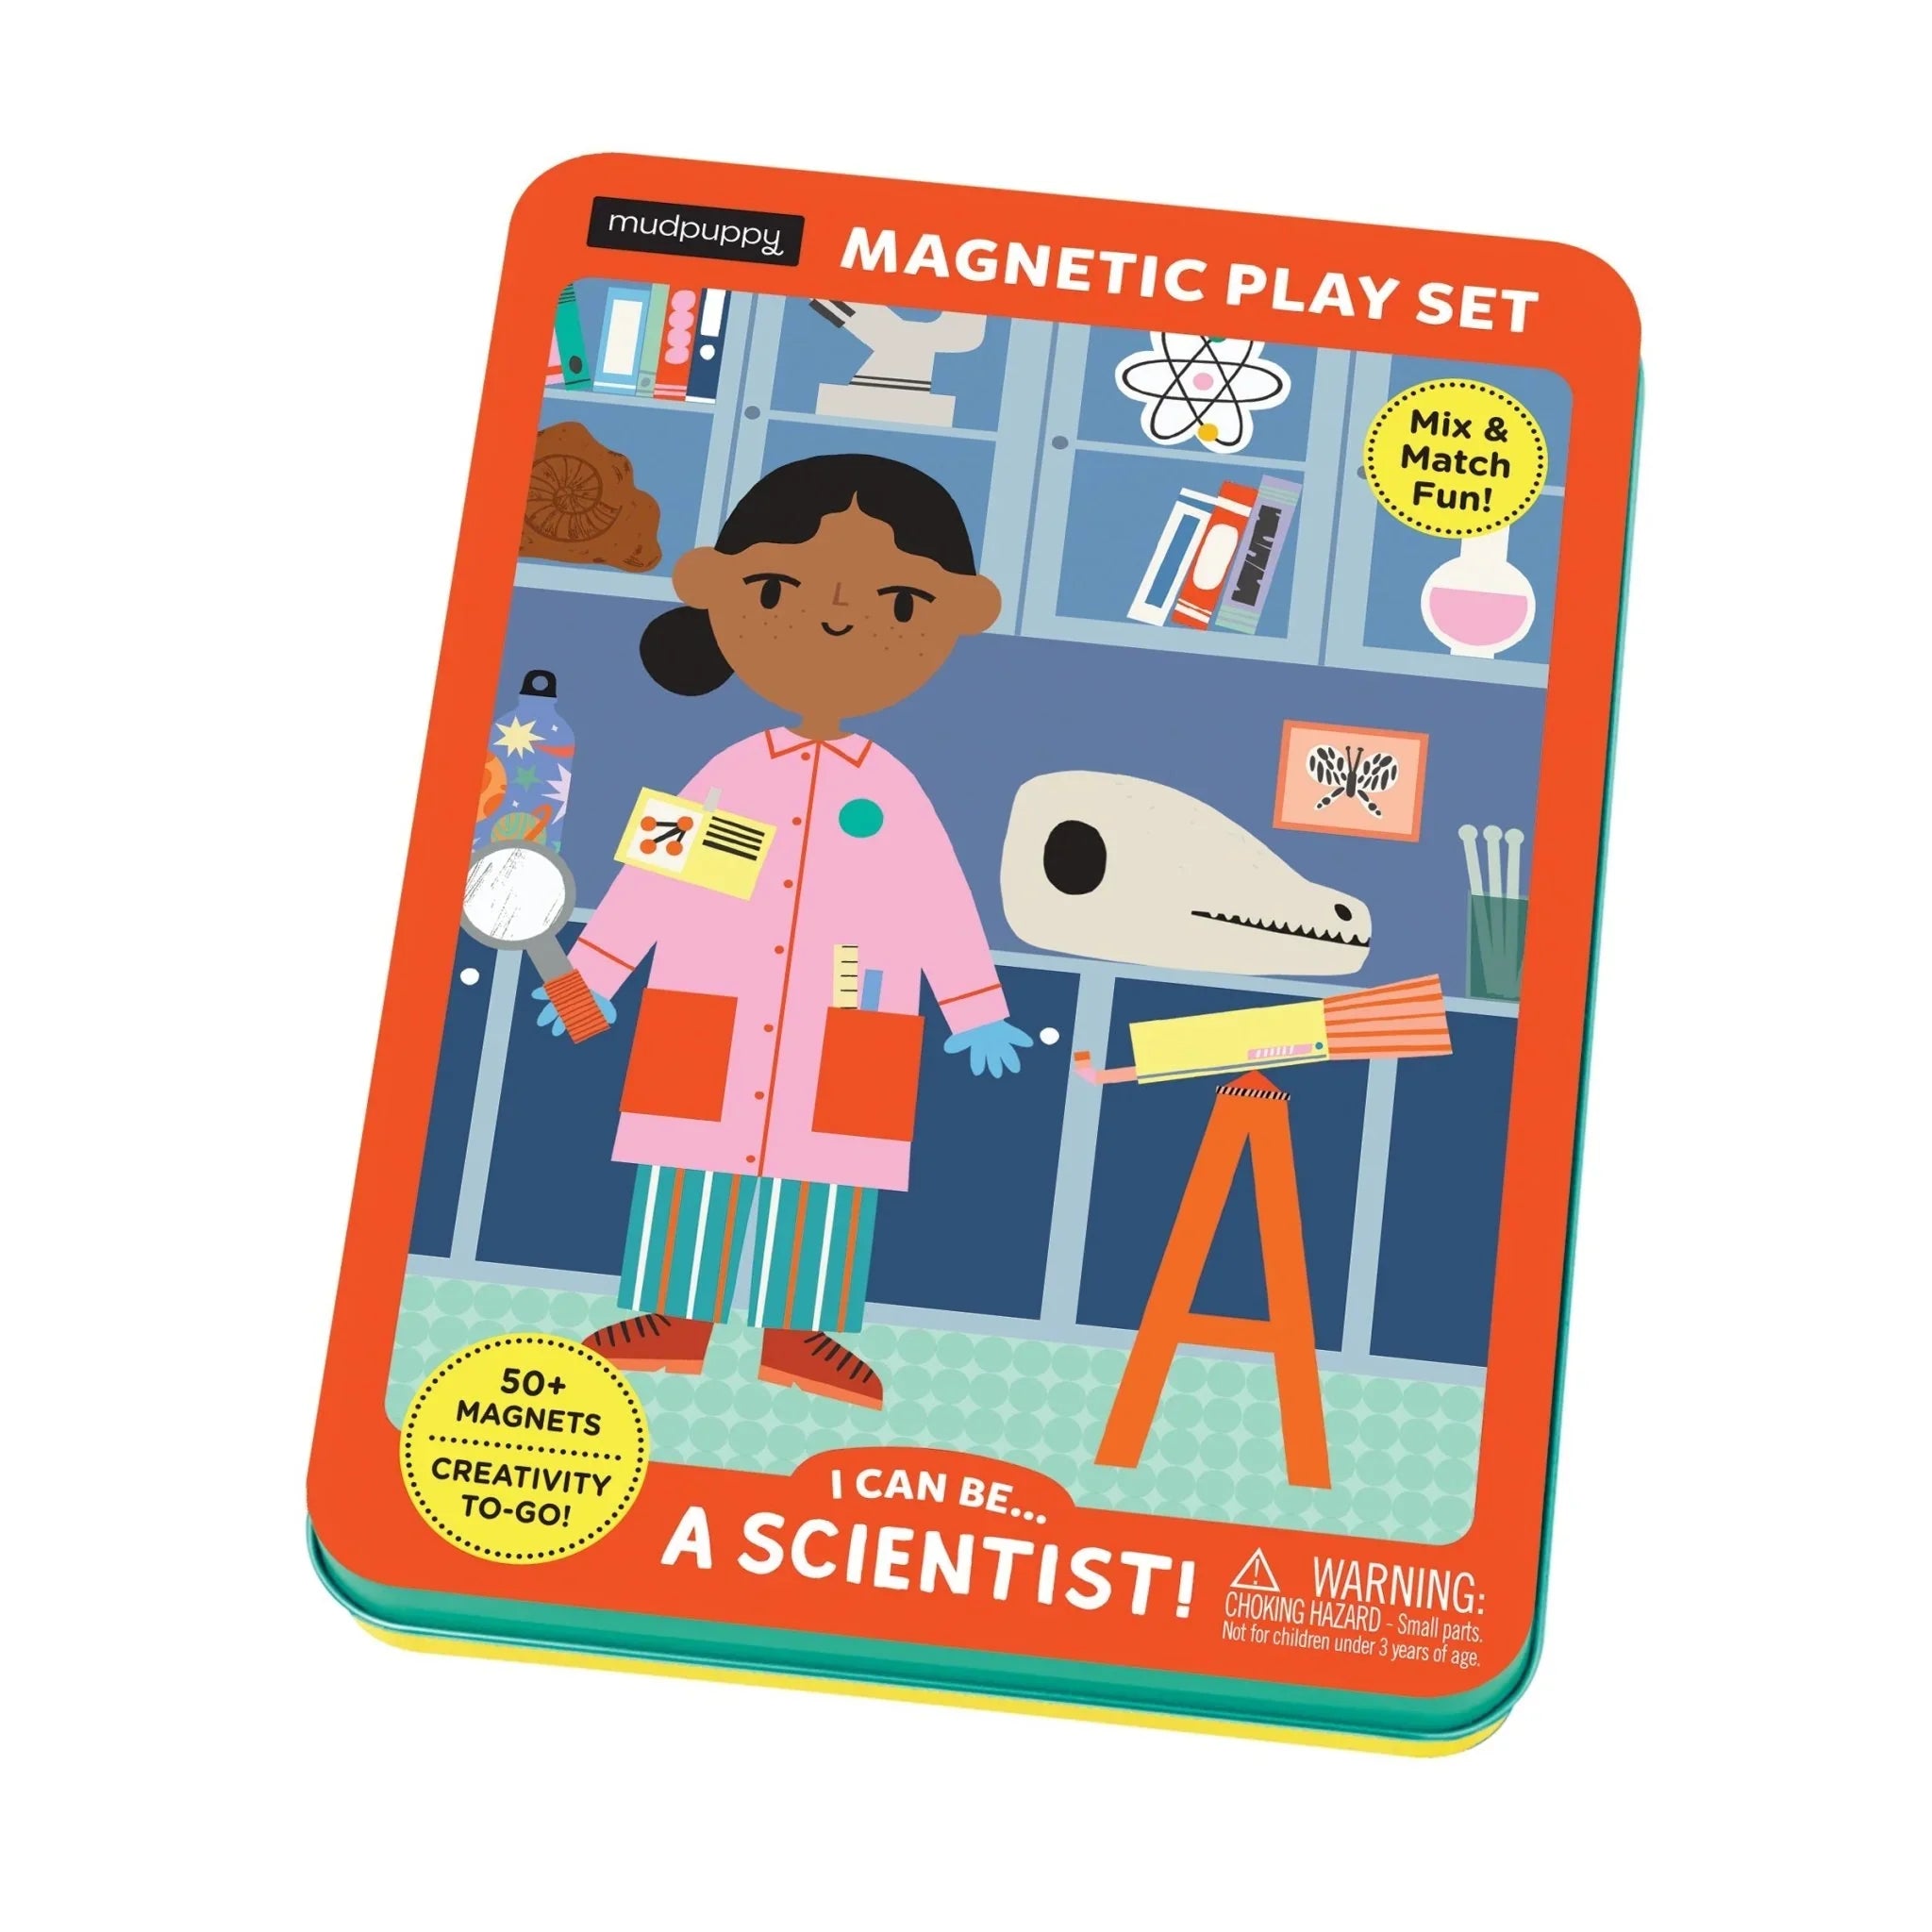 Mudpuppy: magnetski likovi mogu postati ... znanstvenik!